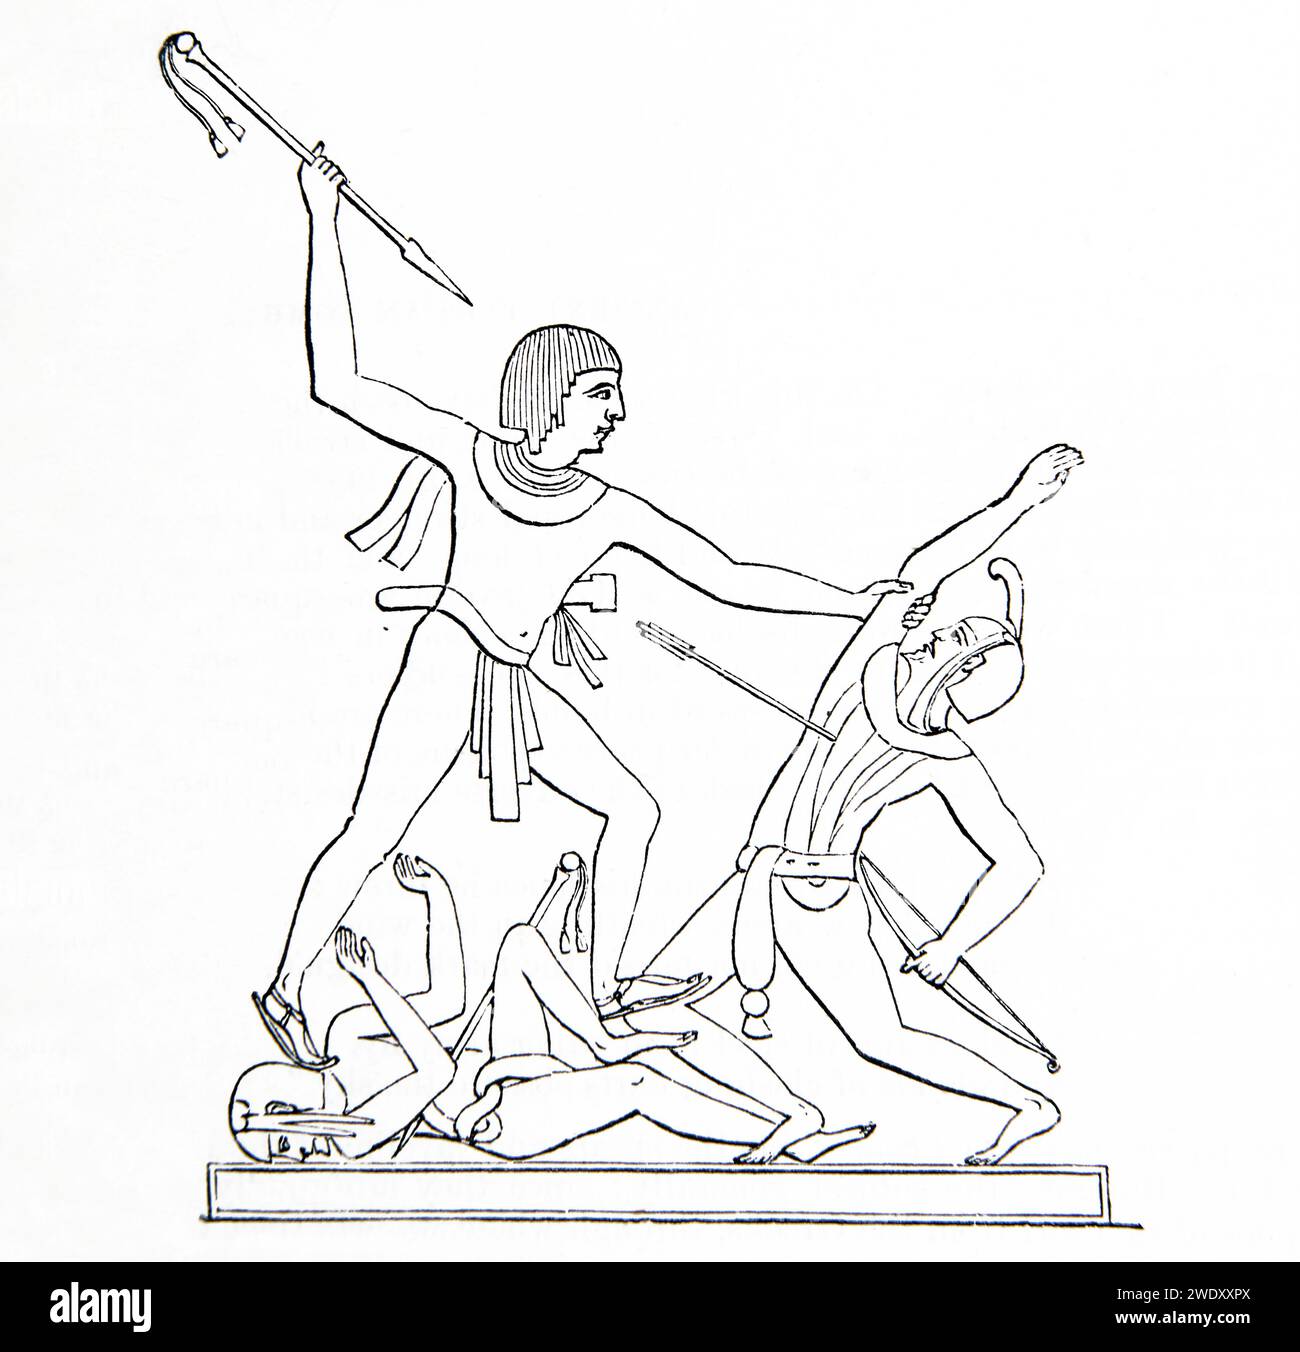 Gravure sur bois de la Bible de famille illustrée - guerriers égyptiens dans la bataille des murs d'un palais à Thèbes en Égypte Banque D'Images